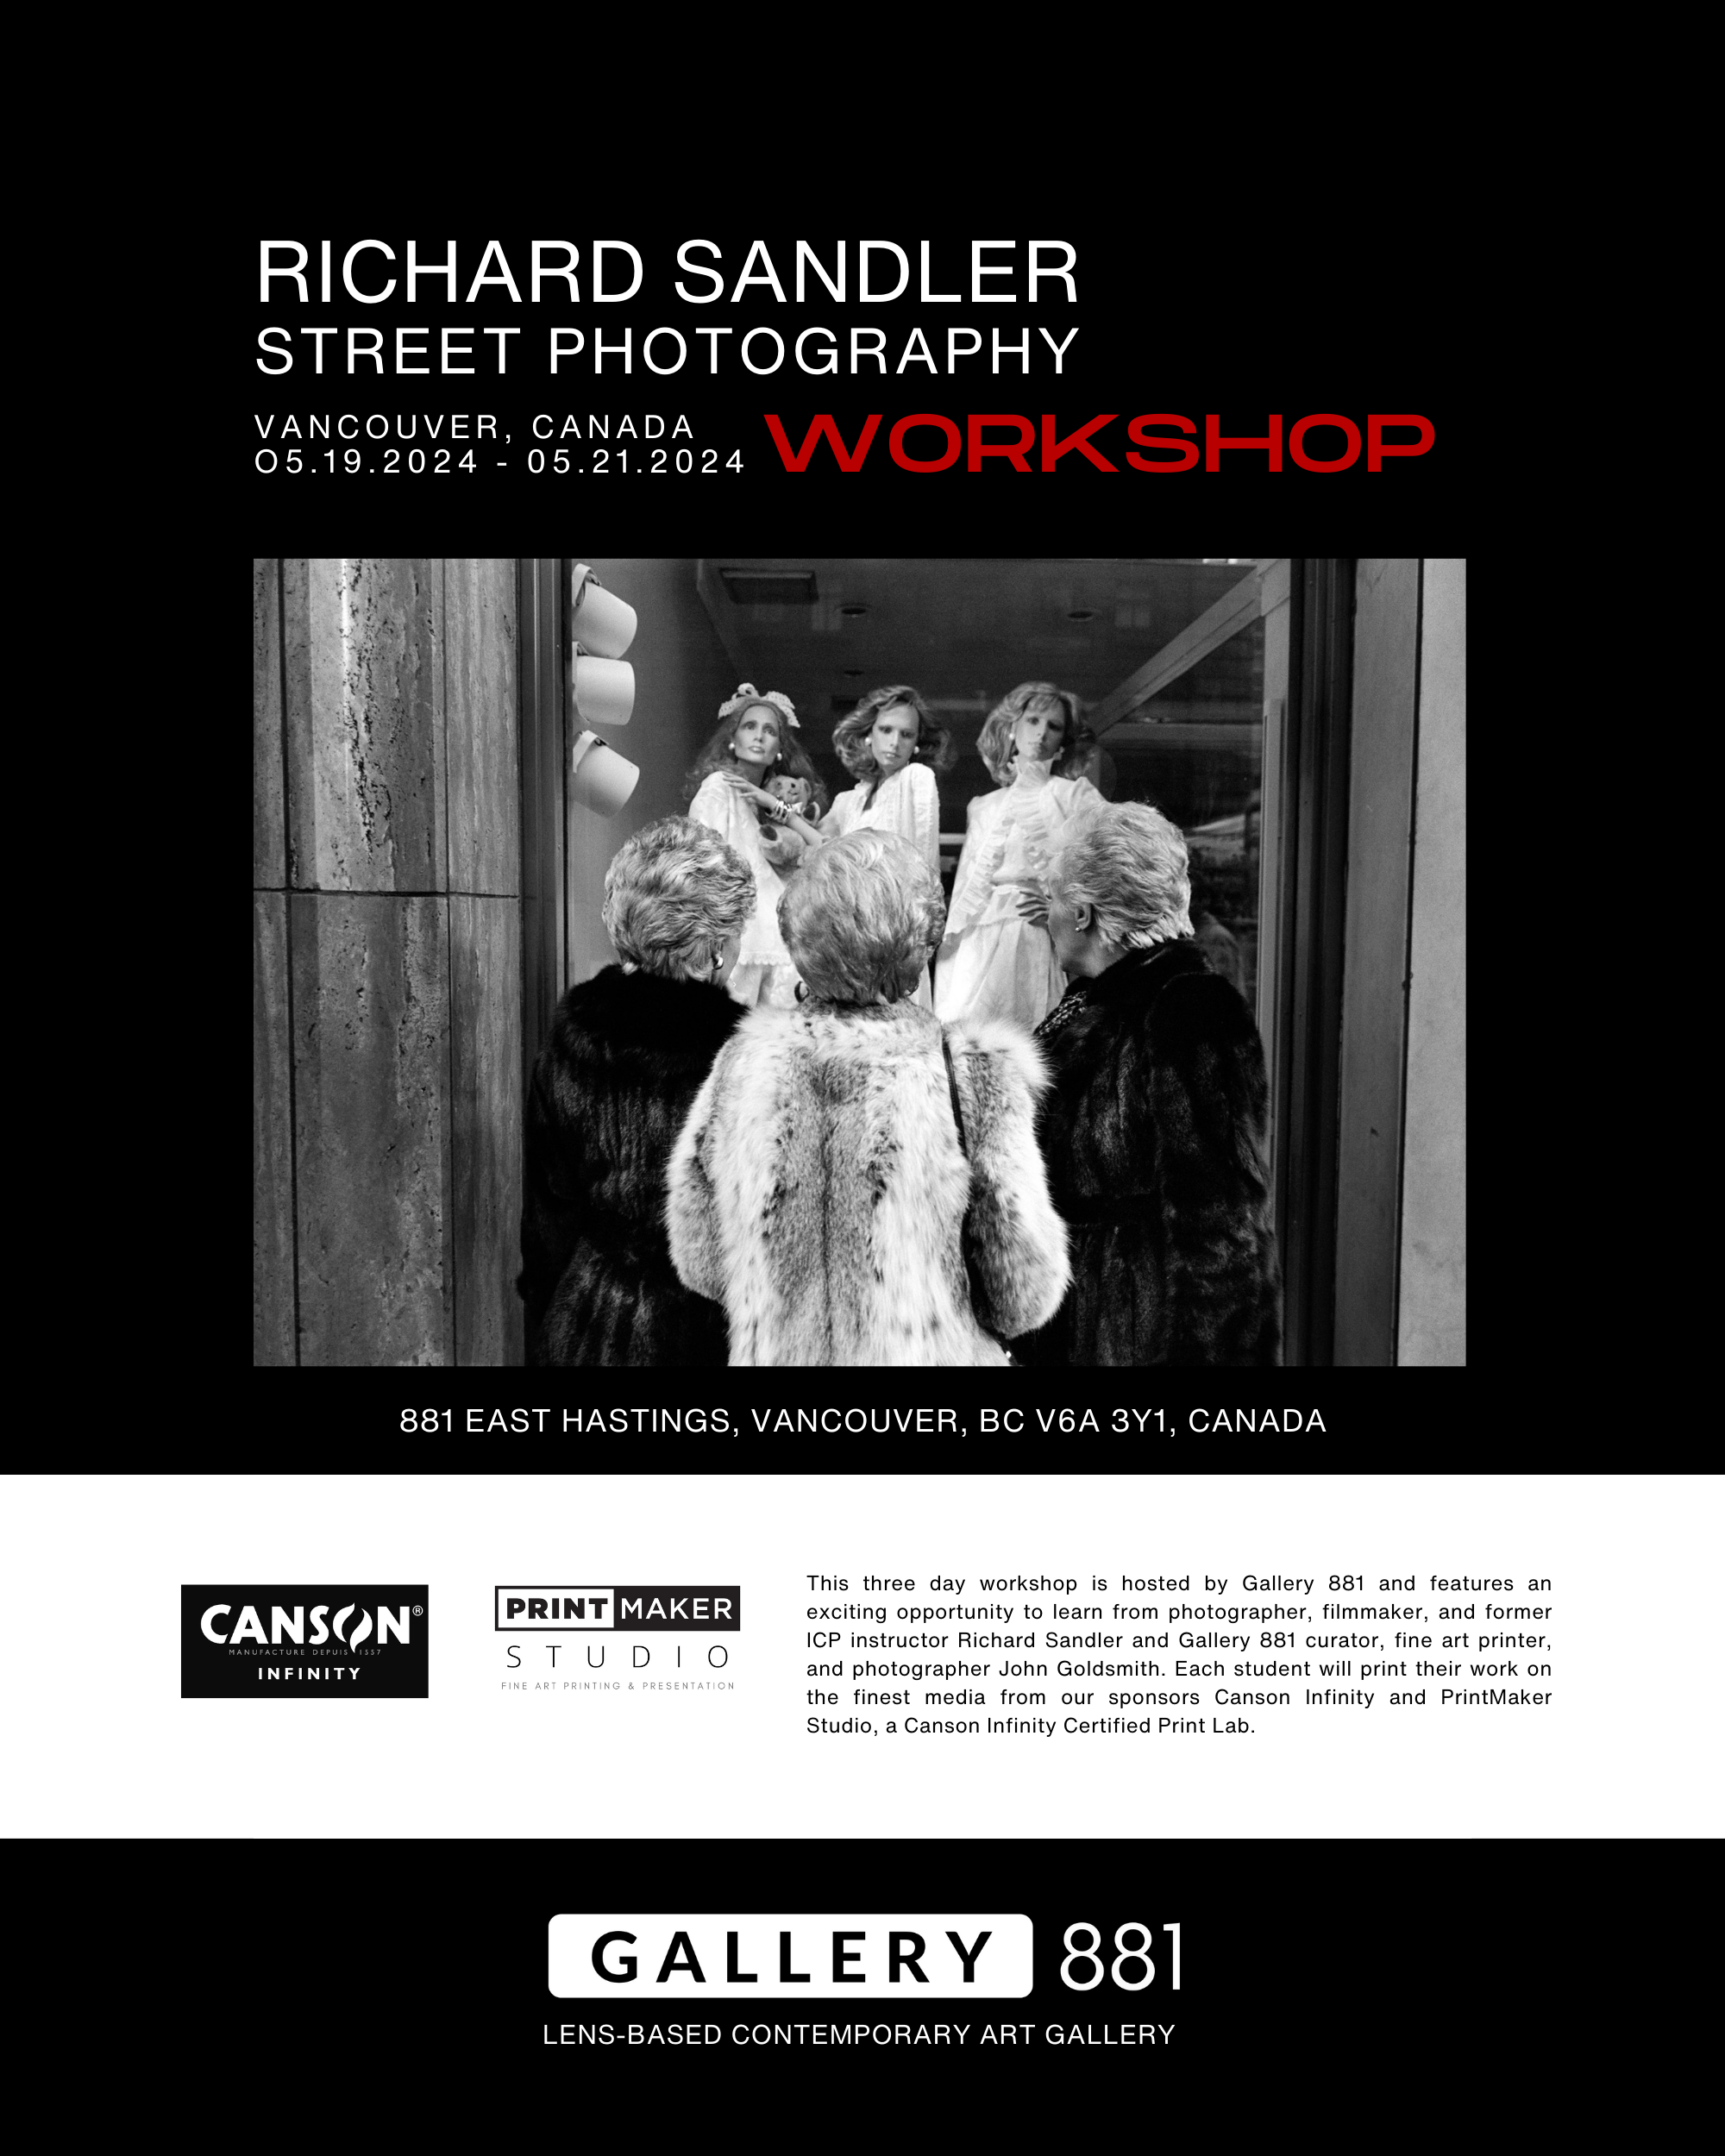 Gallery-881-Richard-Sandler-Workshop-5.png